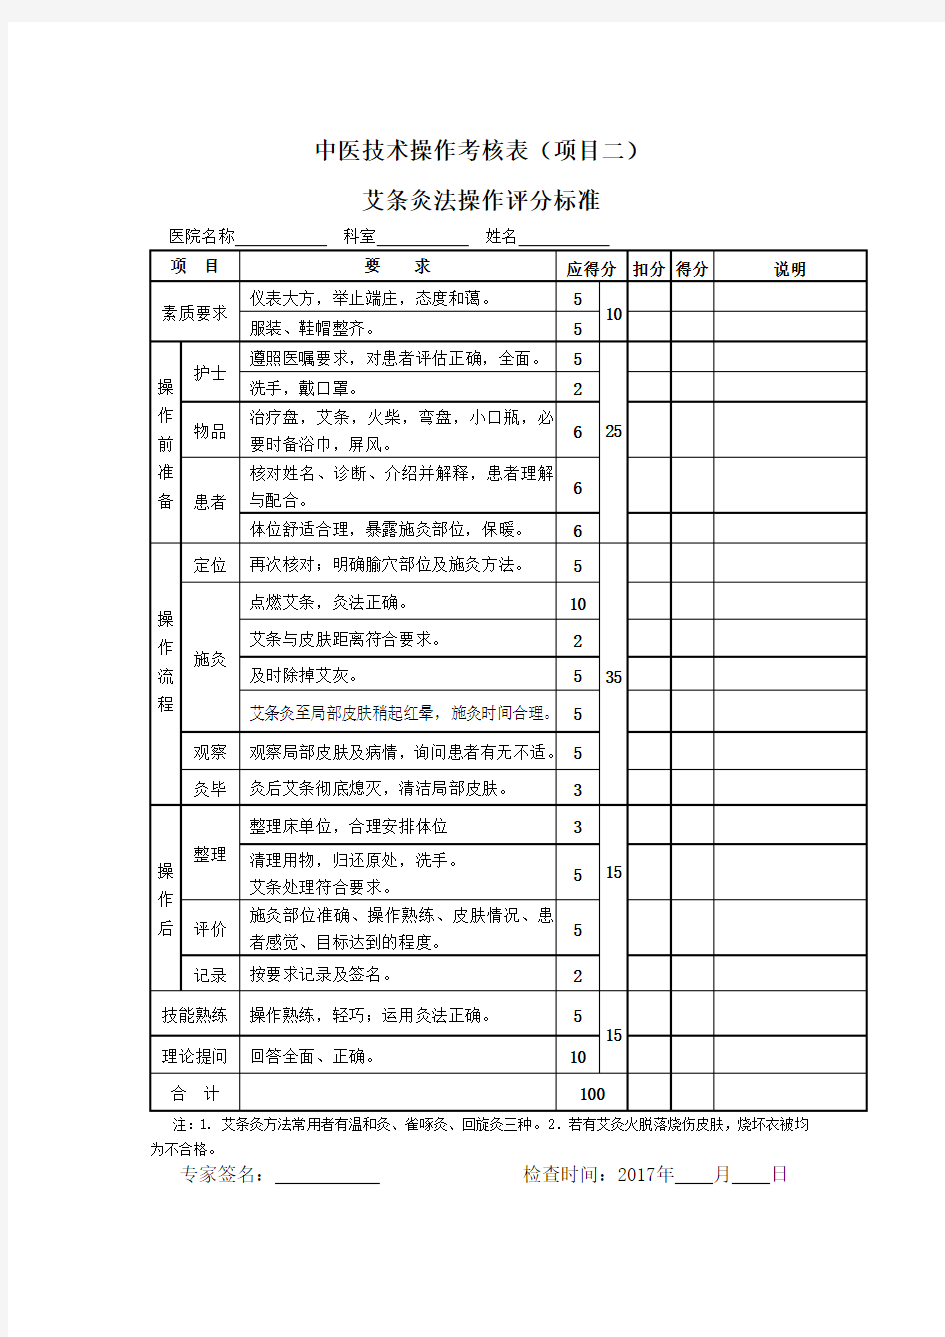 中医8项护理技术操作考核标准